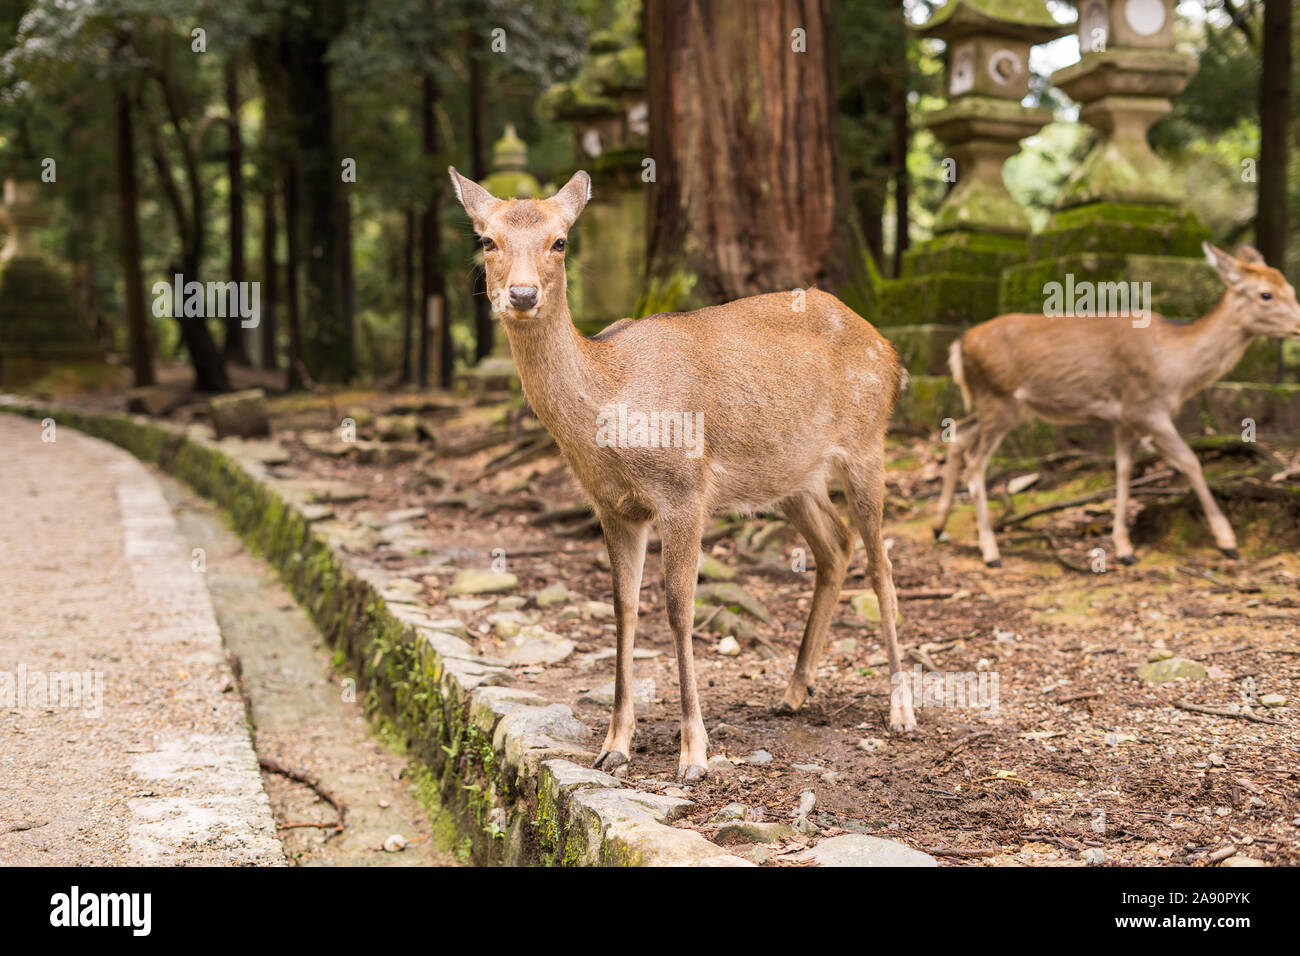 Deer in Nara, Kyoto, Japan Stock Photo